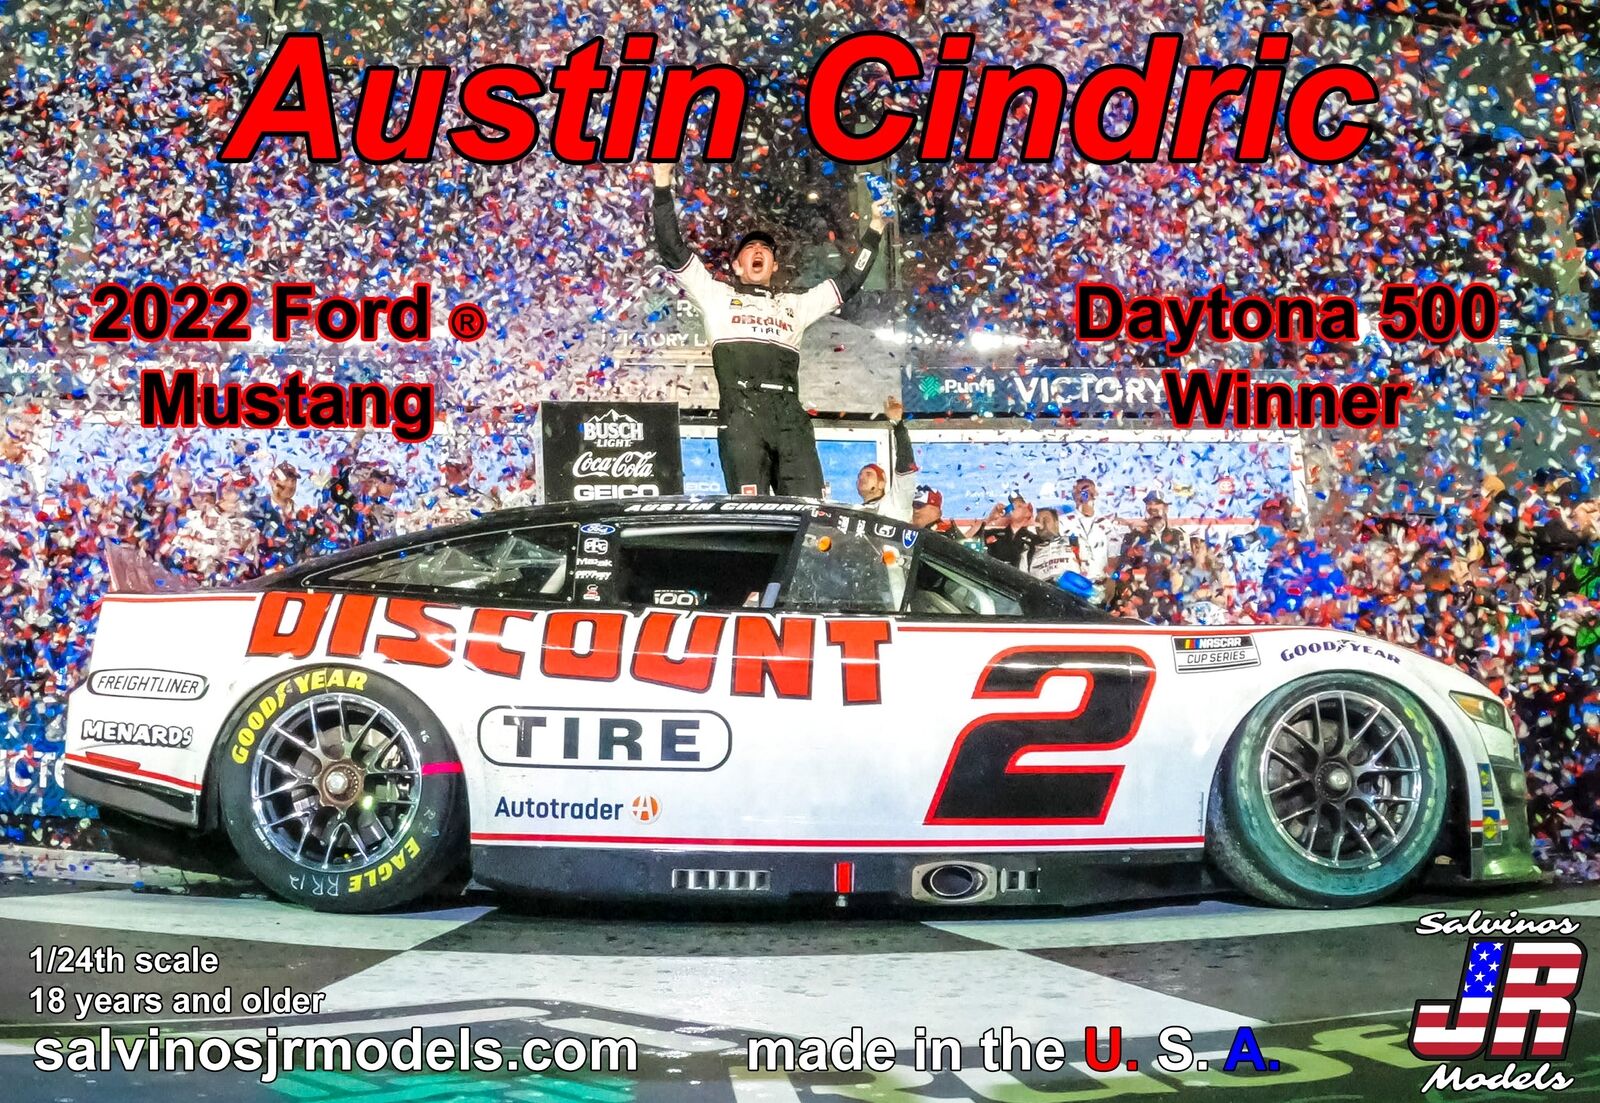 PF2022ACD- Team Penske Austin Cindric 2022 Ford Mustang Daytona 500 winner